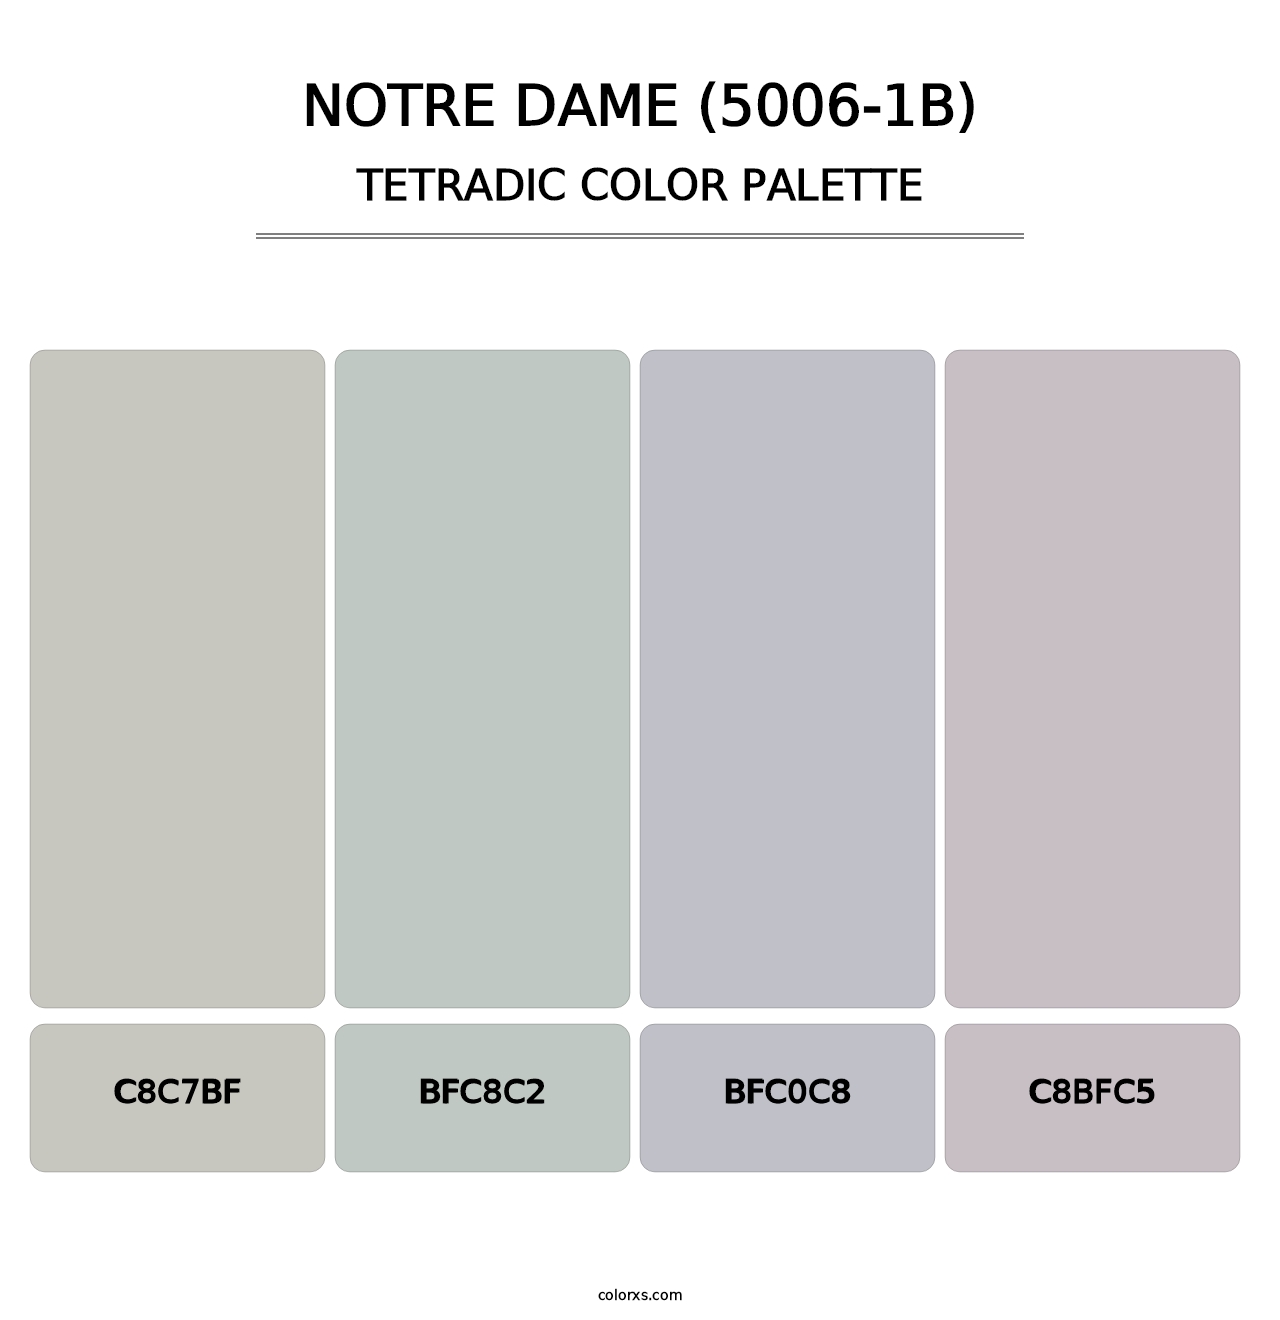 Notre Dame (5006-1B) - Tetradic Color Palette